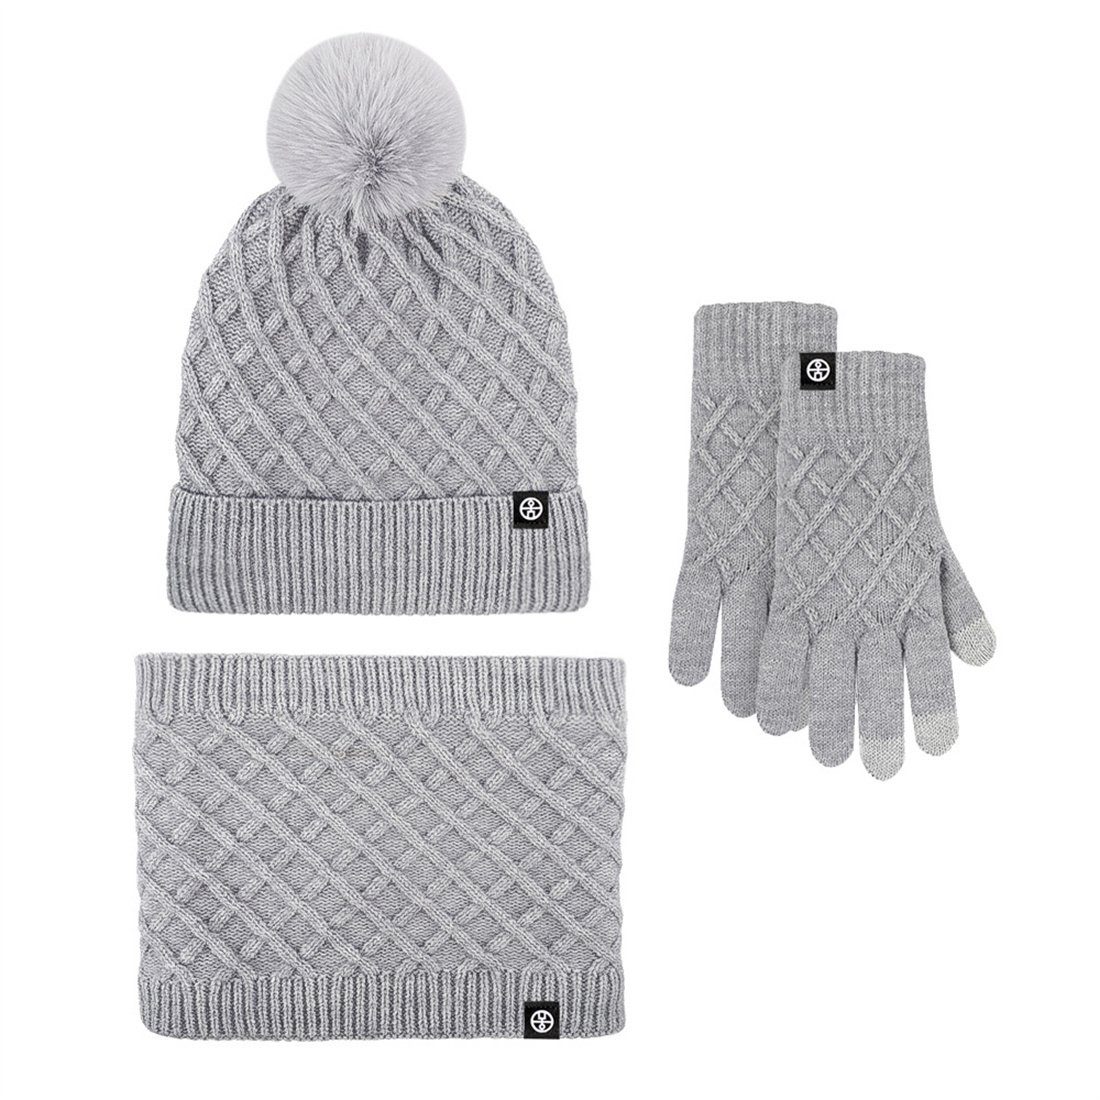 Mütze Strickmütze 3 Grau Warm Schal Warm Stück, Winter Set Handschuhe DÖRÖY gepolstert